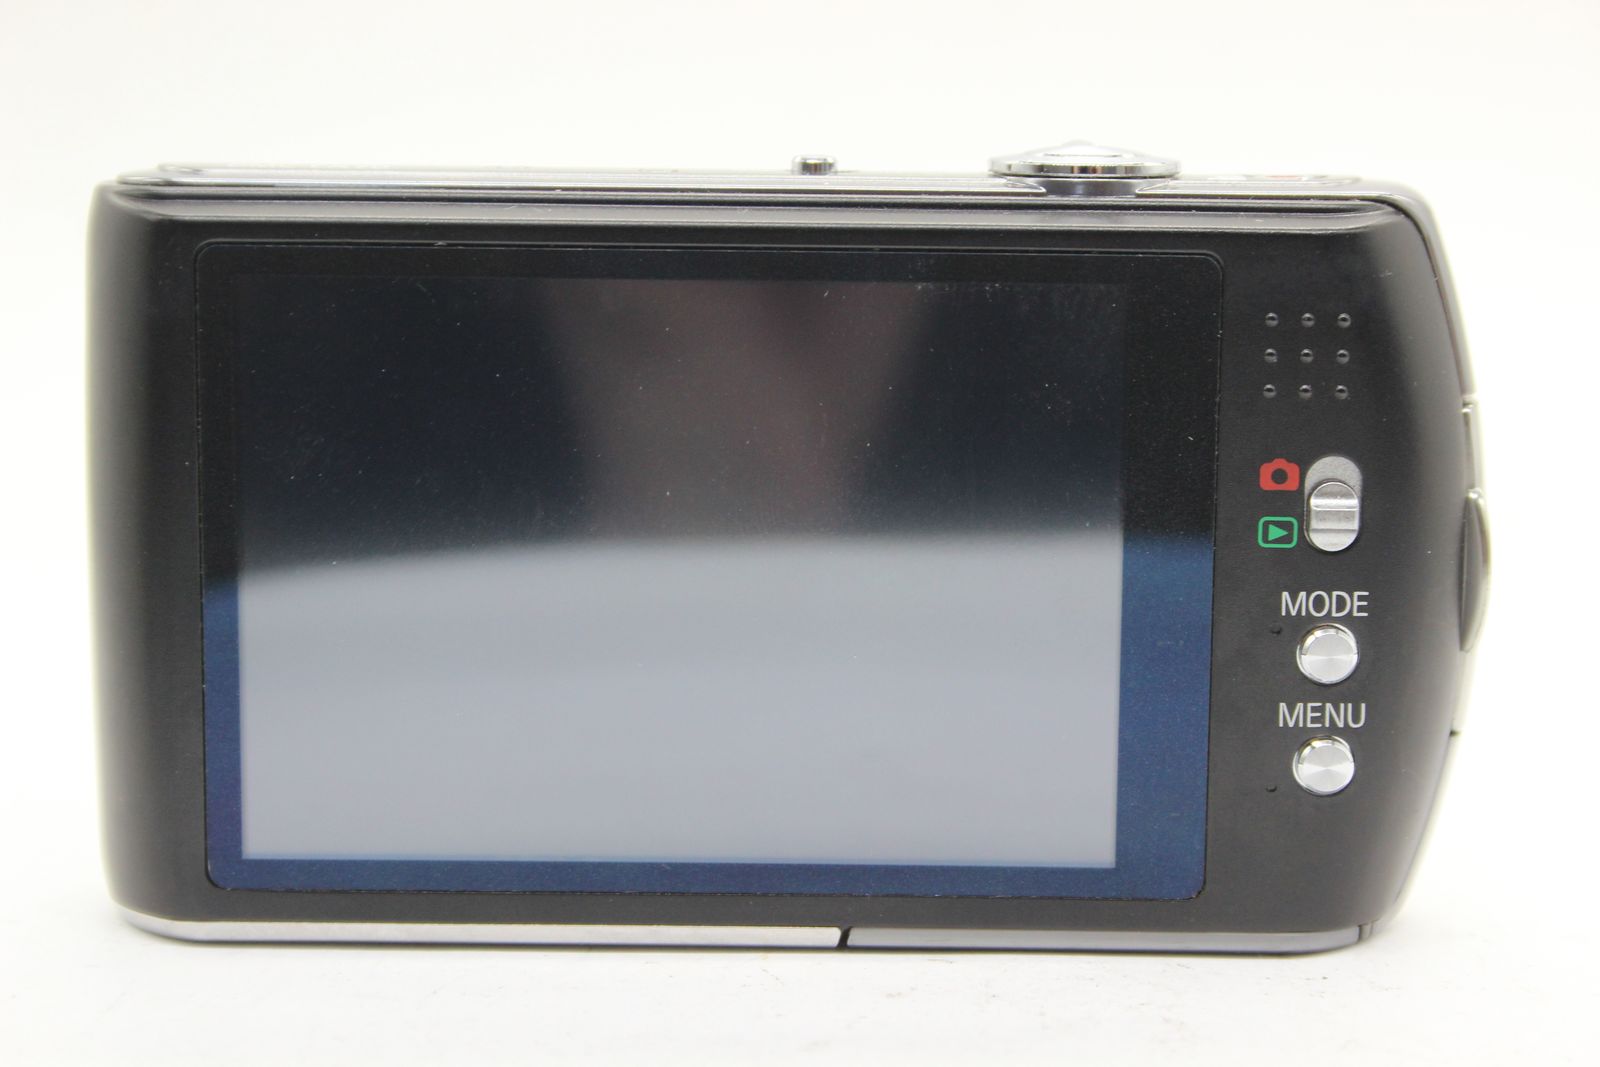 【美品 返品保証】 パナソニック Panasonic LUMIX DMC-FX70 ブラック 24mm Wide バッテリー付き  コンパクトデジタルカメラ s4974